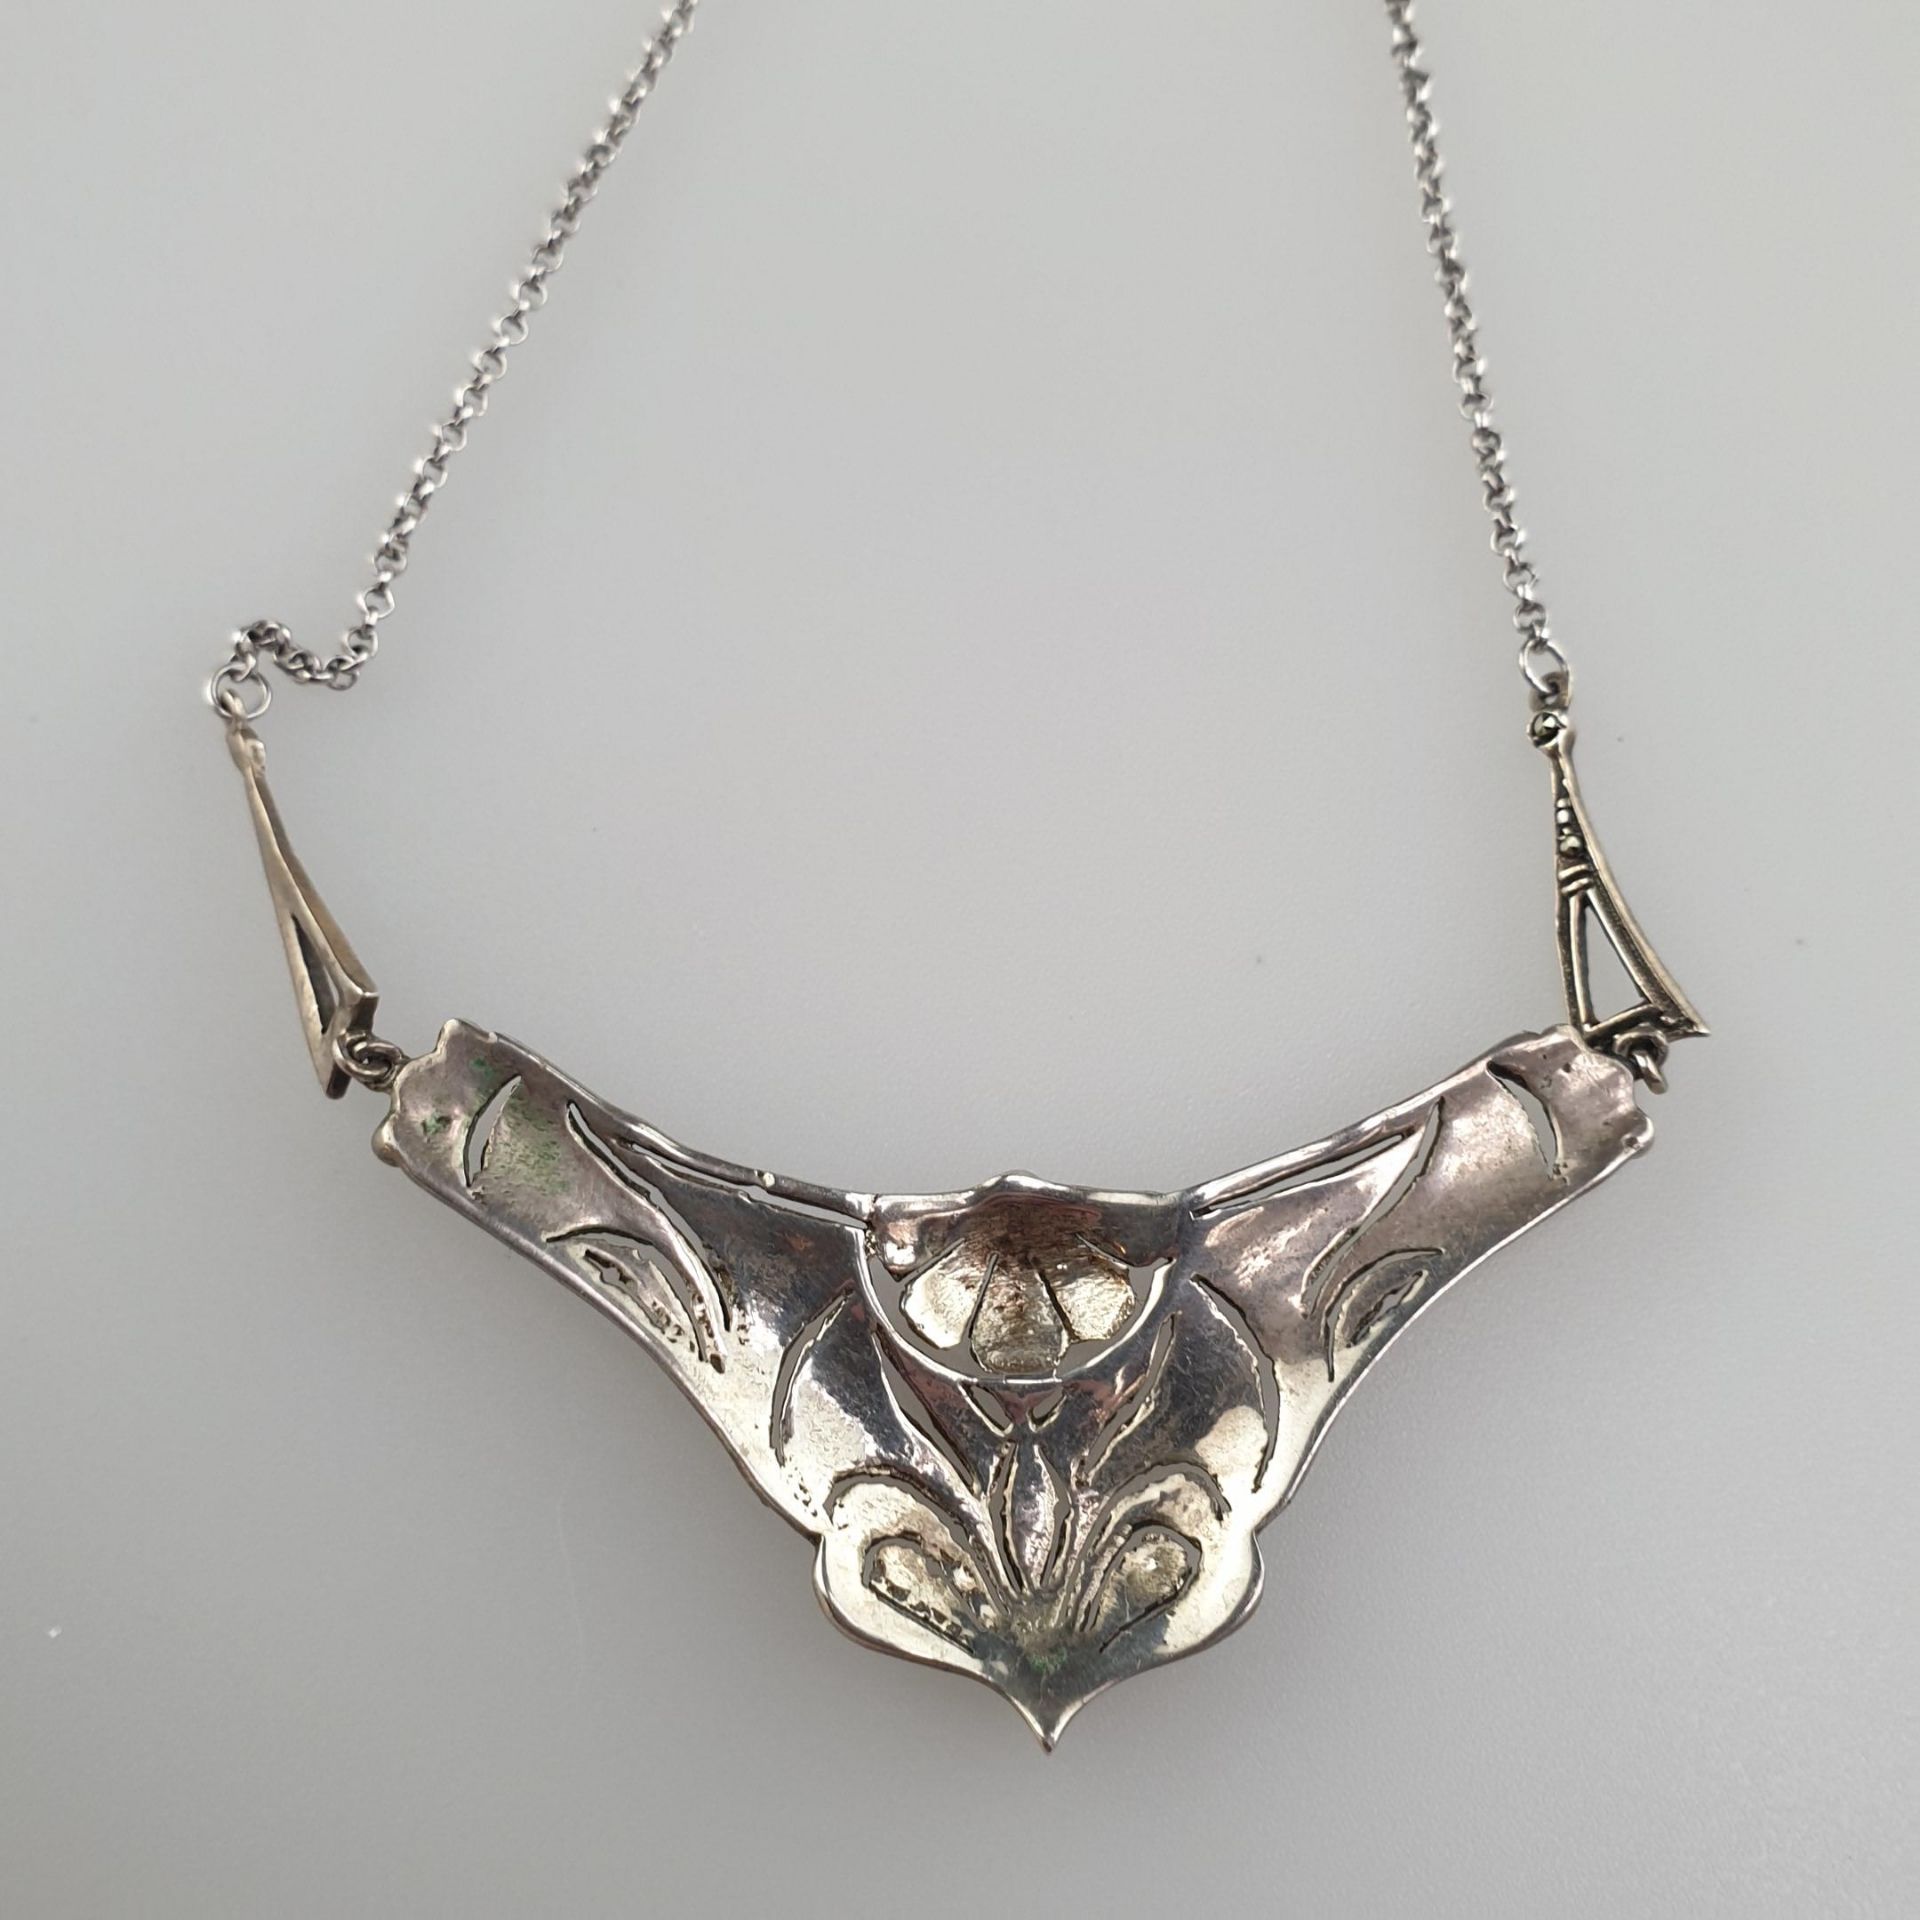 Silbercollier - Silber 925, gestempelt, ornamental gestaltetes mittiges Zierelement mit - Bild 5 aus 5